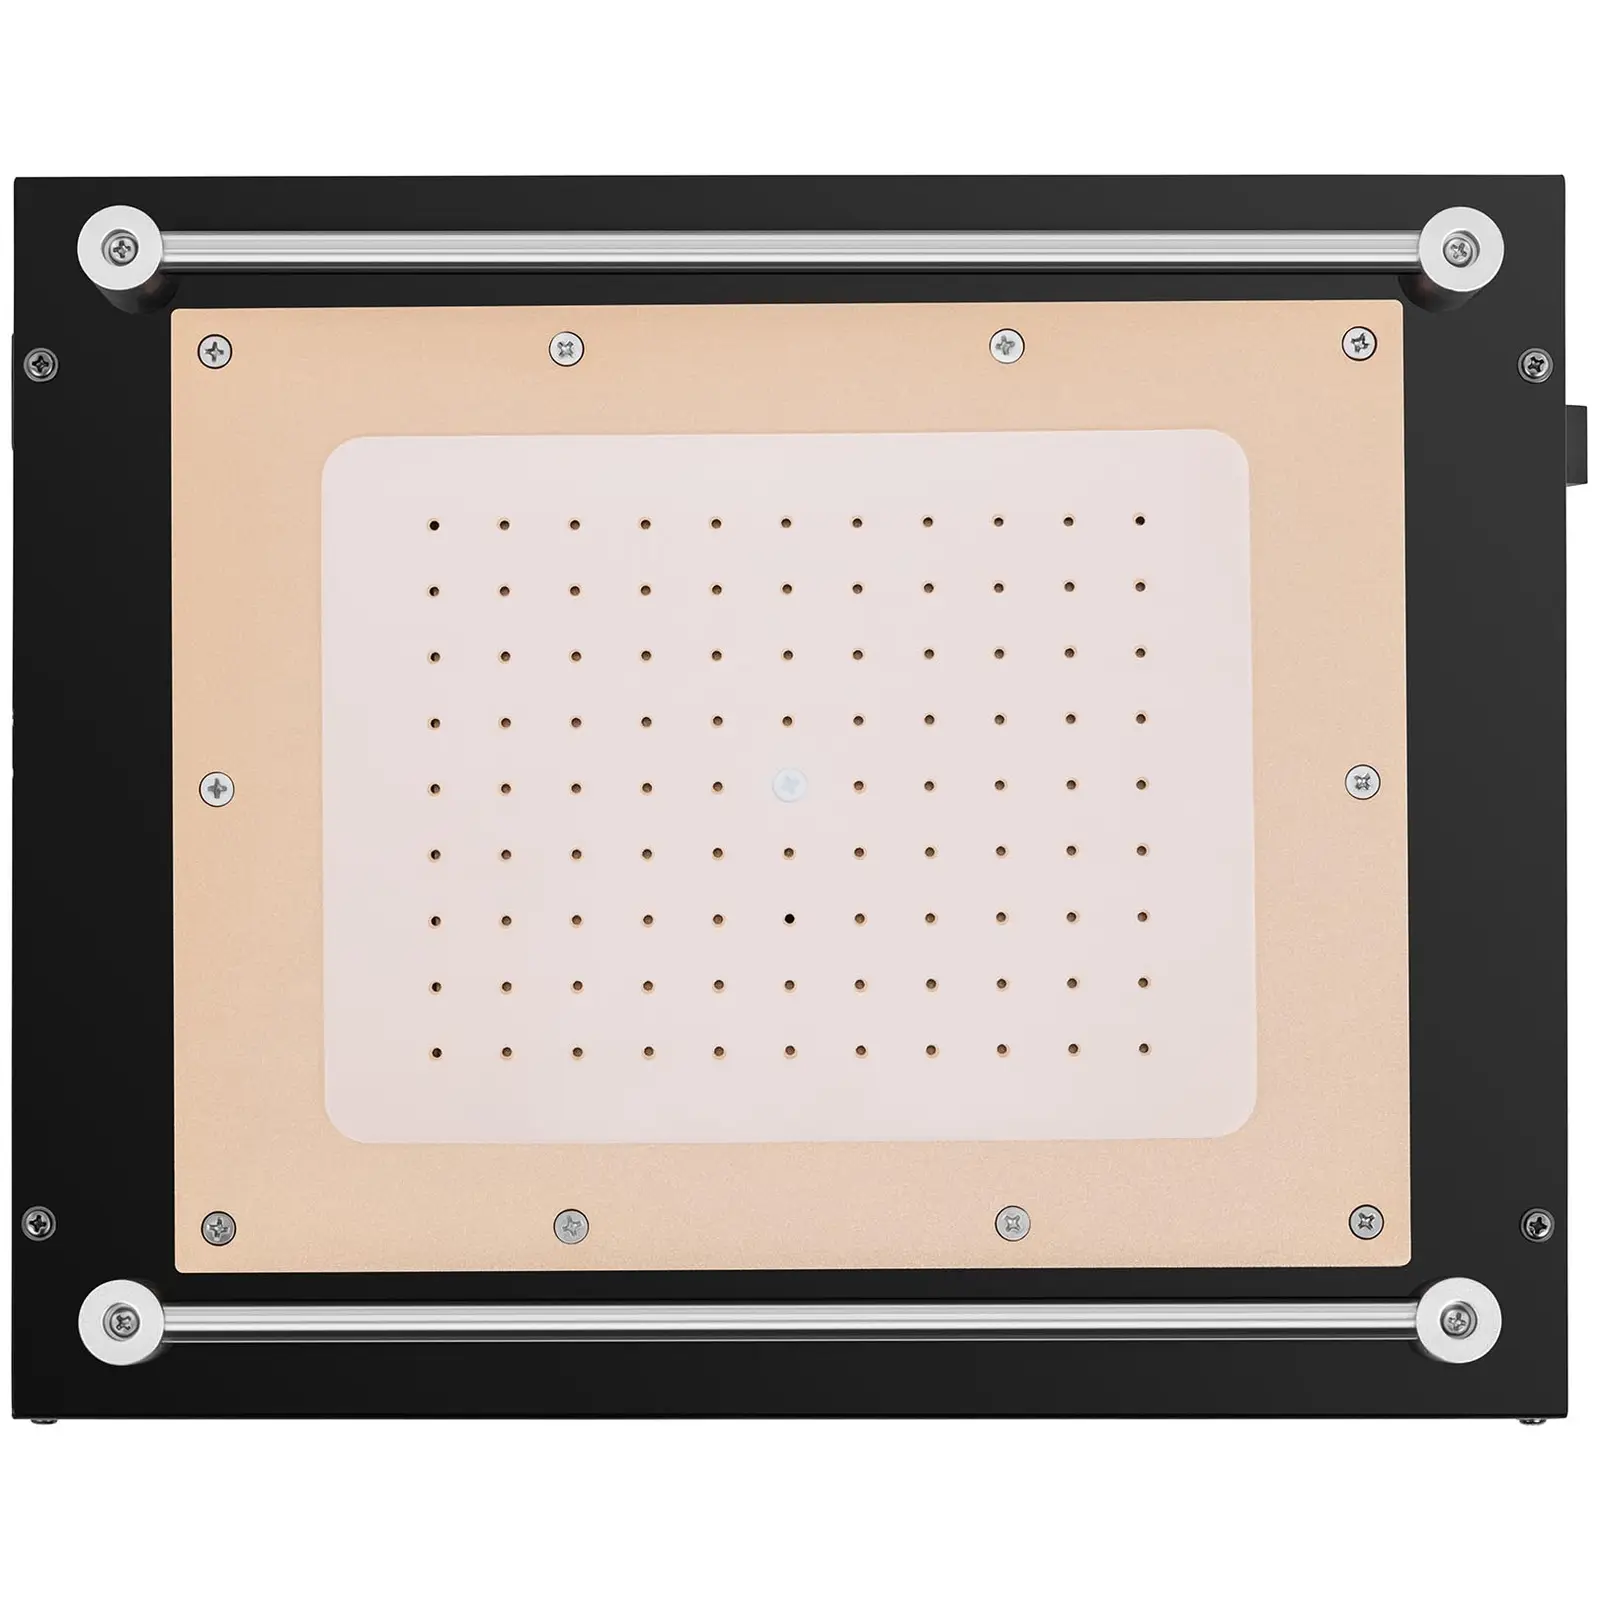 LCD Separator - cell phone/tablet display repair - 12"